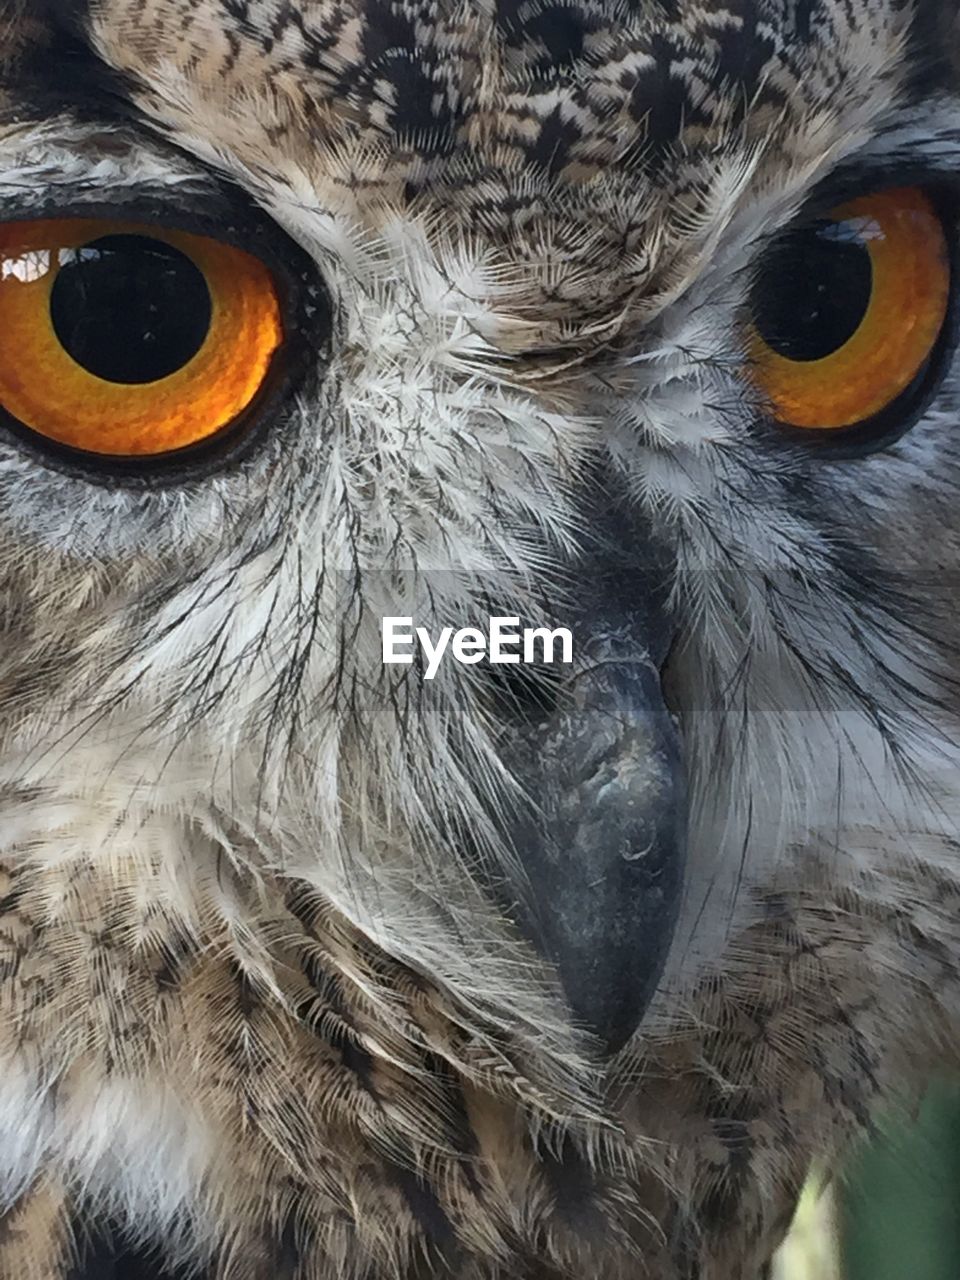 Extreme close up of animal eye